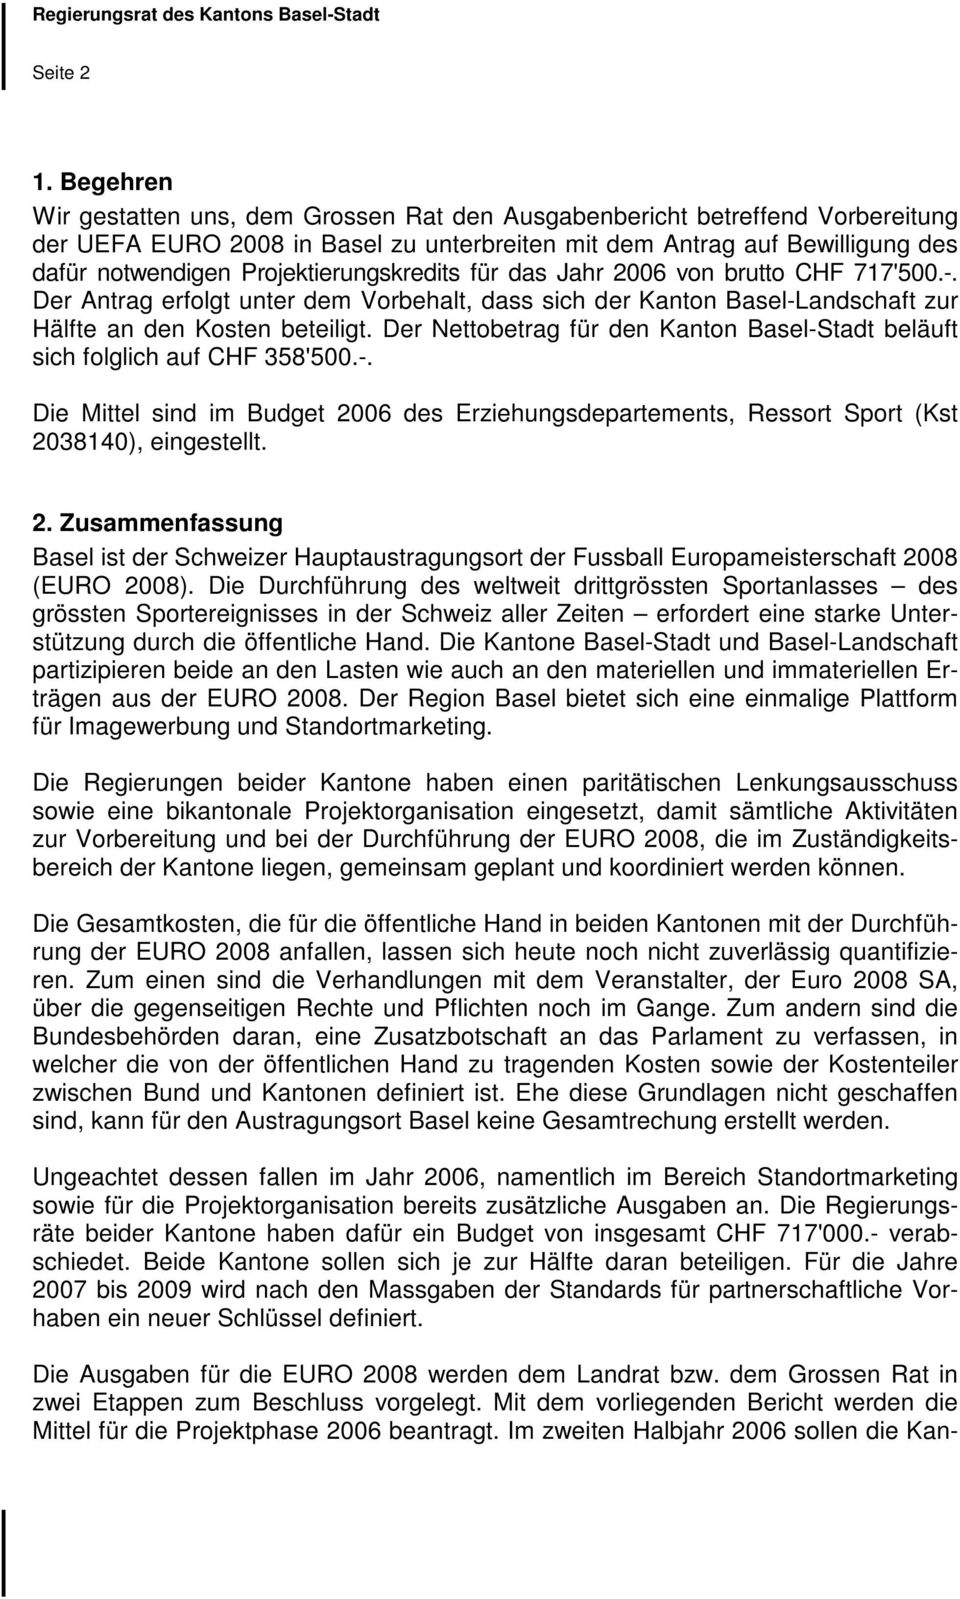 Projektierungskredits für das Jahr 2006 von brutto CHF 717'500.-. Der Antrag erfolgt unter dem Vorbehalt, dass sich der Kanton Basel-Landschaft zur Hälfte an den Kosten beteiligt.